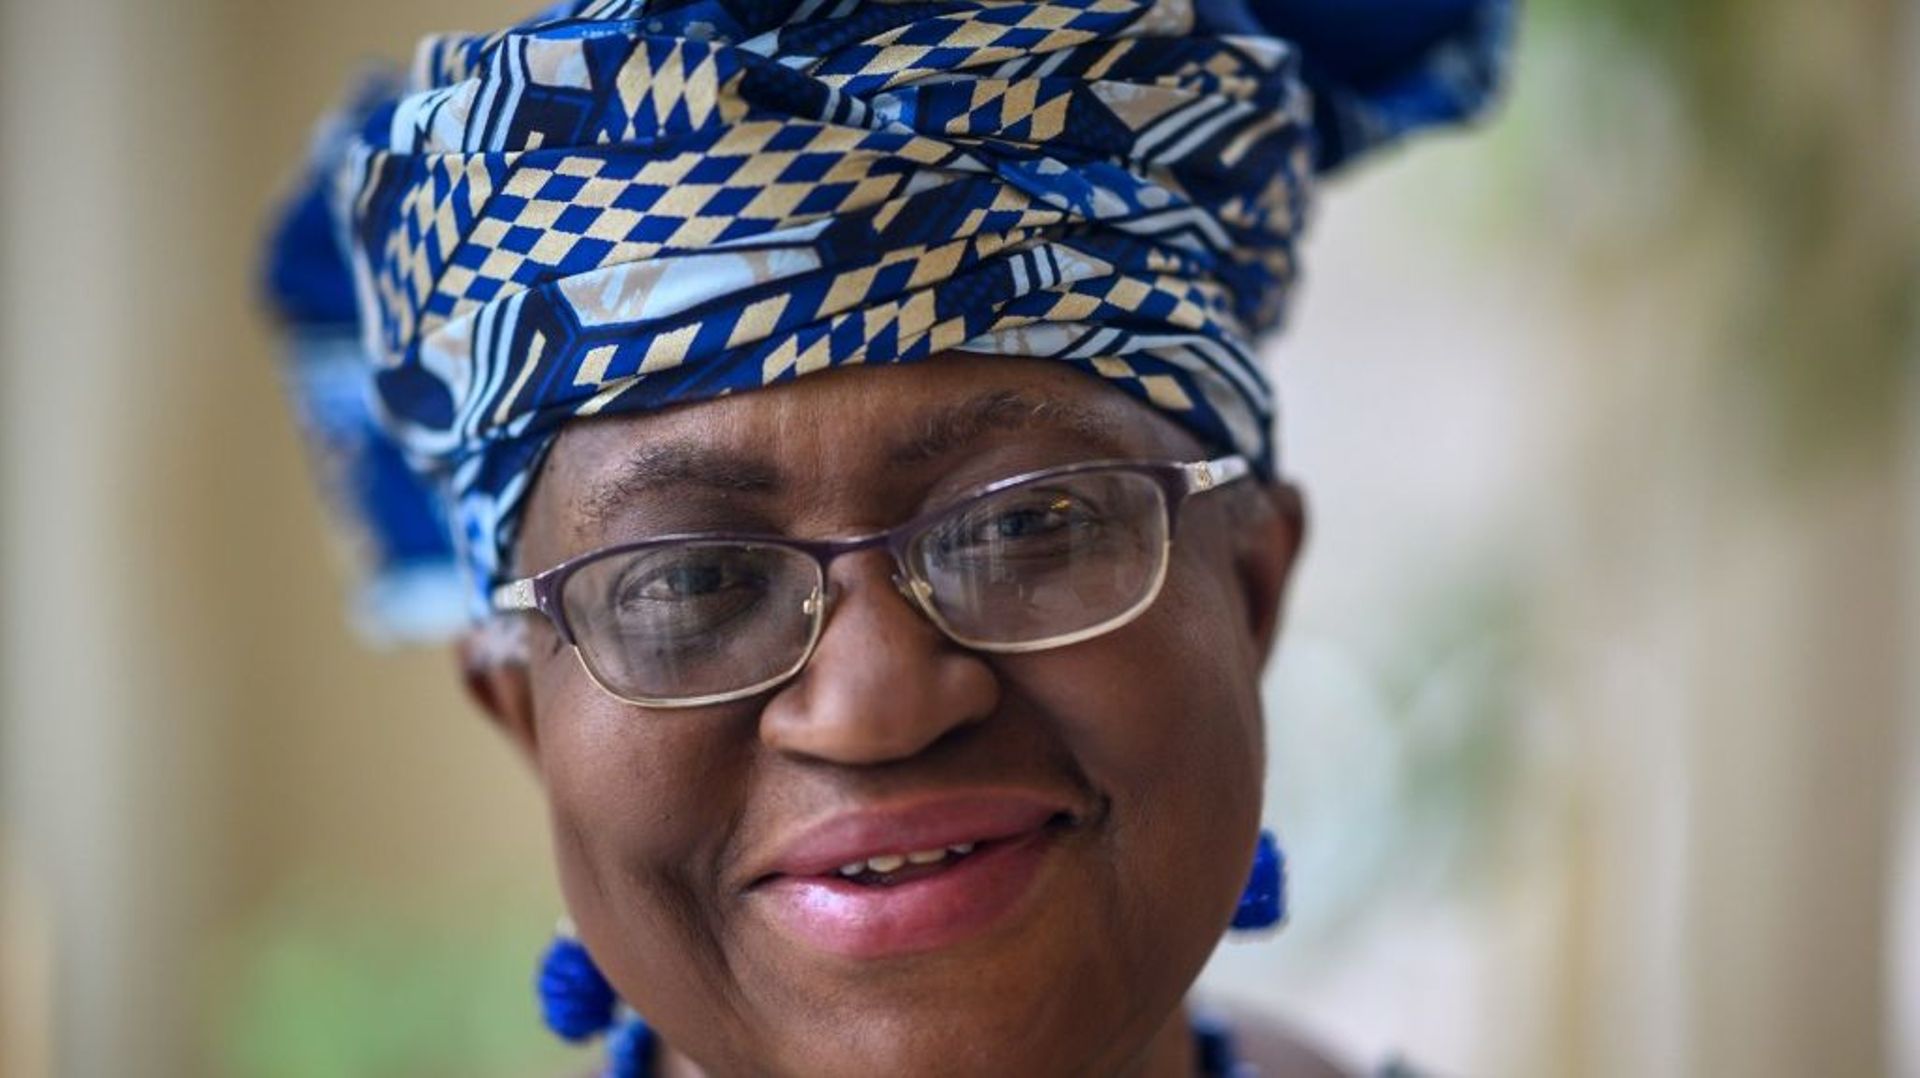 La Nigériane Ngozi Okonjo-Iweala a été nommée lundi première femme et première Africaine à la tête de l'Organisation mondiale du commerce (OMC).